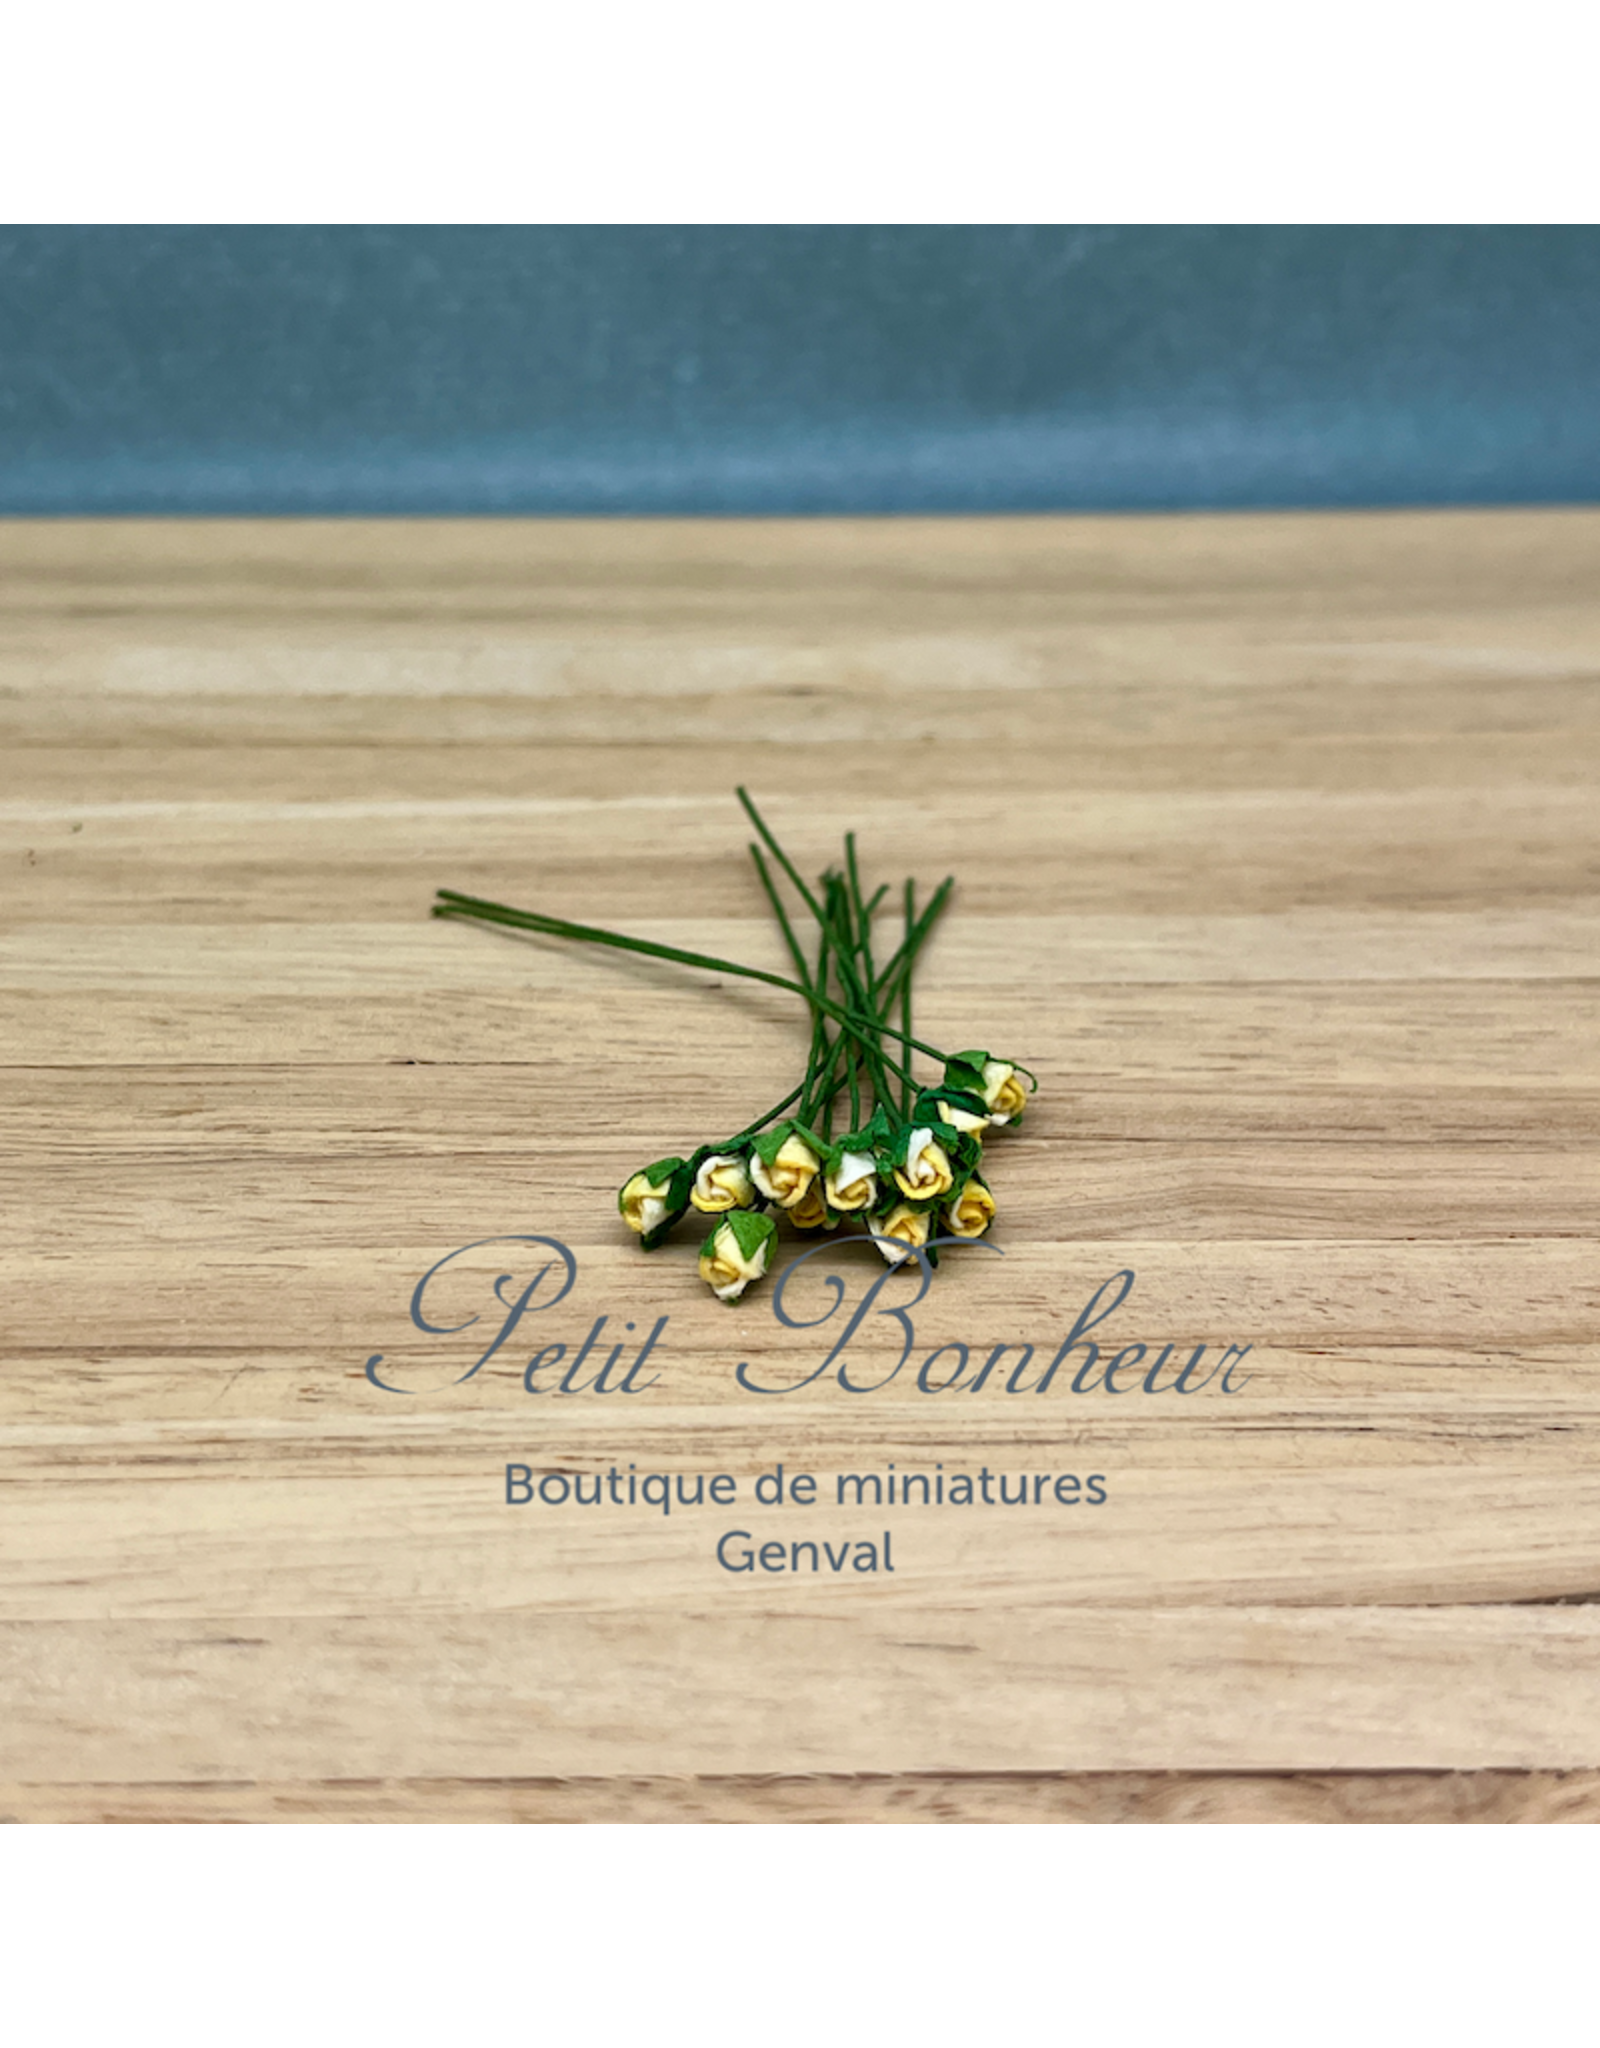 Boutons de rose couleur jaune clair (12) miniature 1:12 single